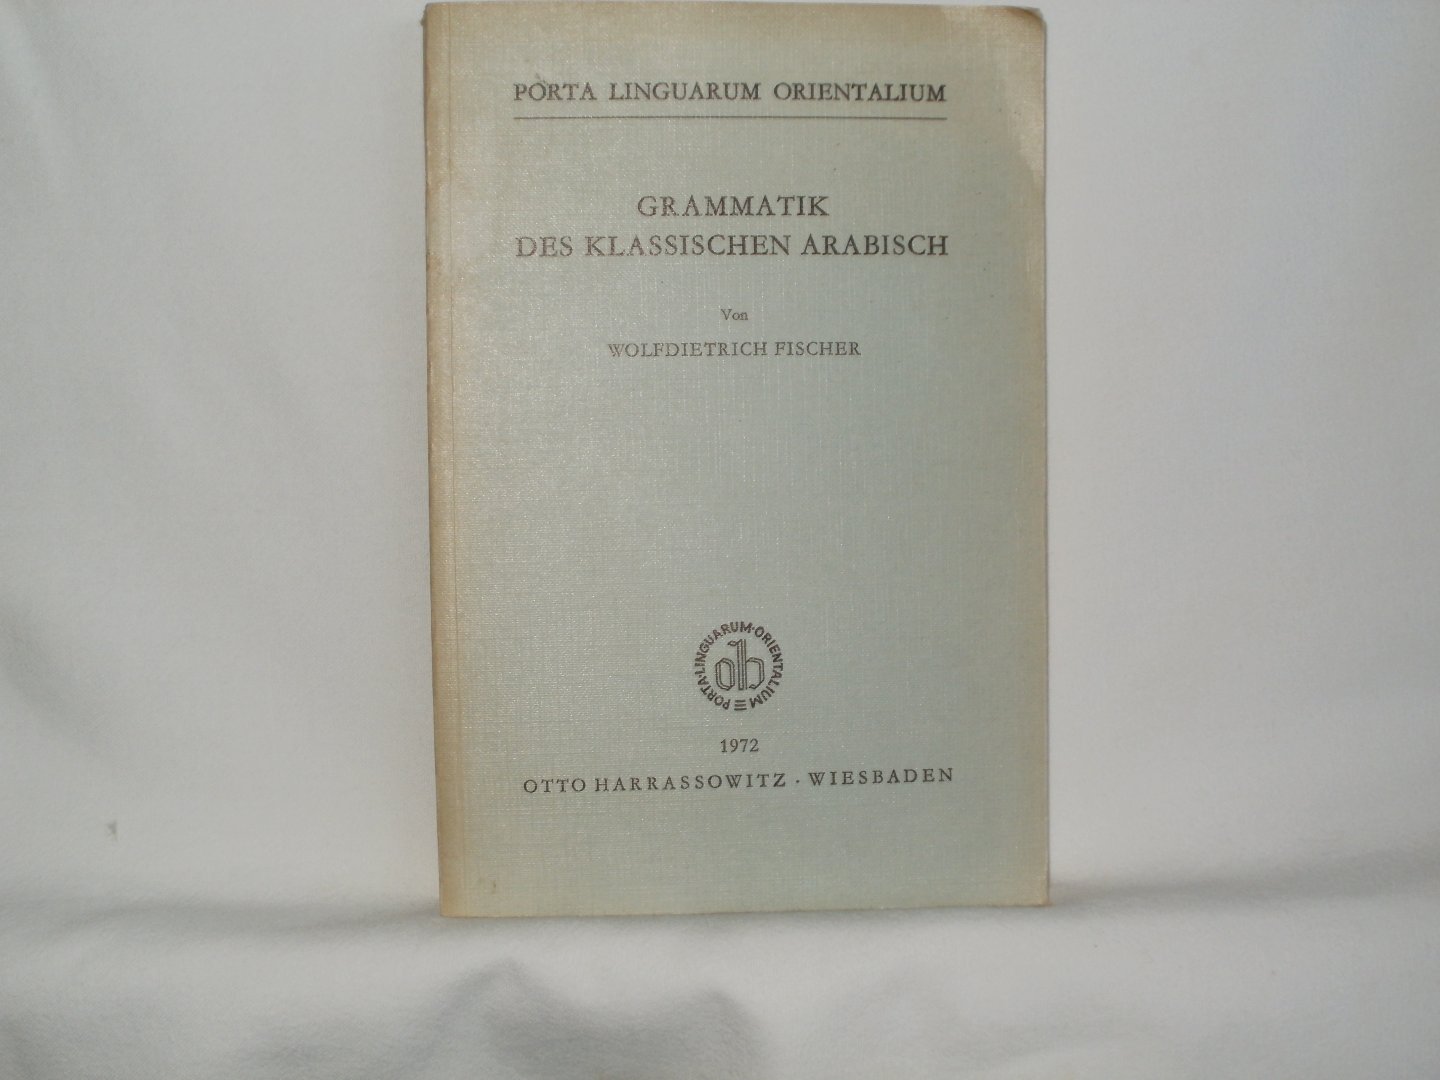 Fischer, Wolfdietrich - Grammatik des Klassischen Arabisch. Porta Linguarum Orientalium, neue Serie 11.